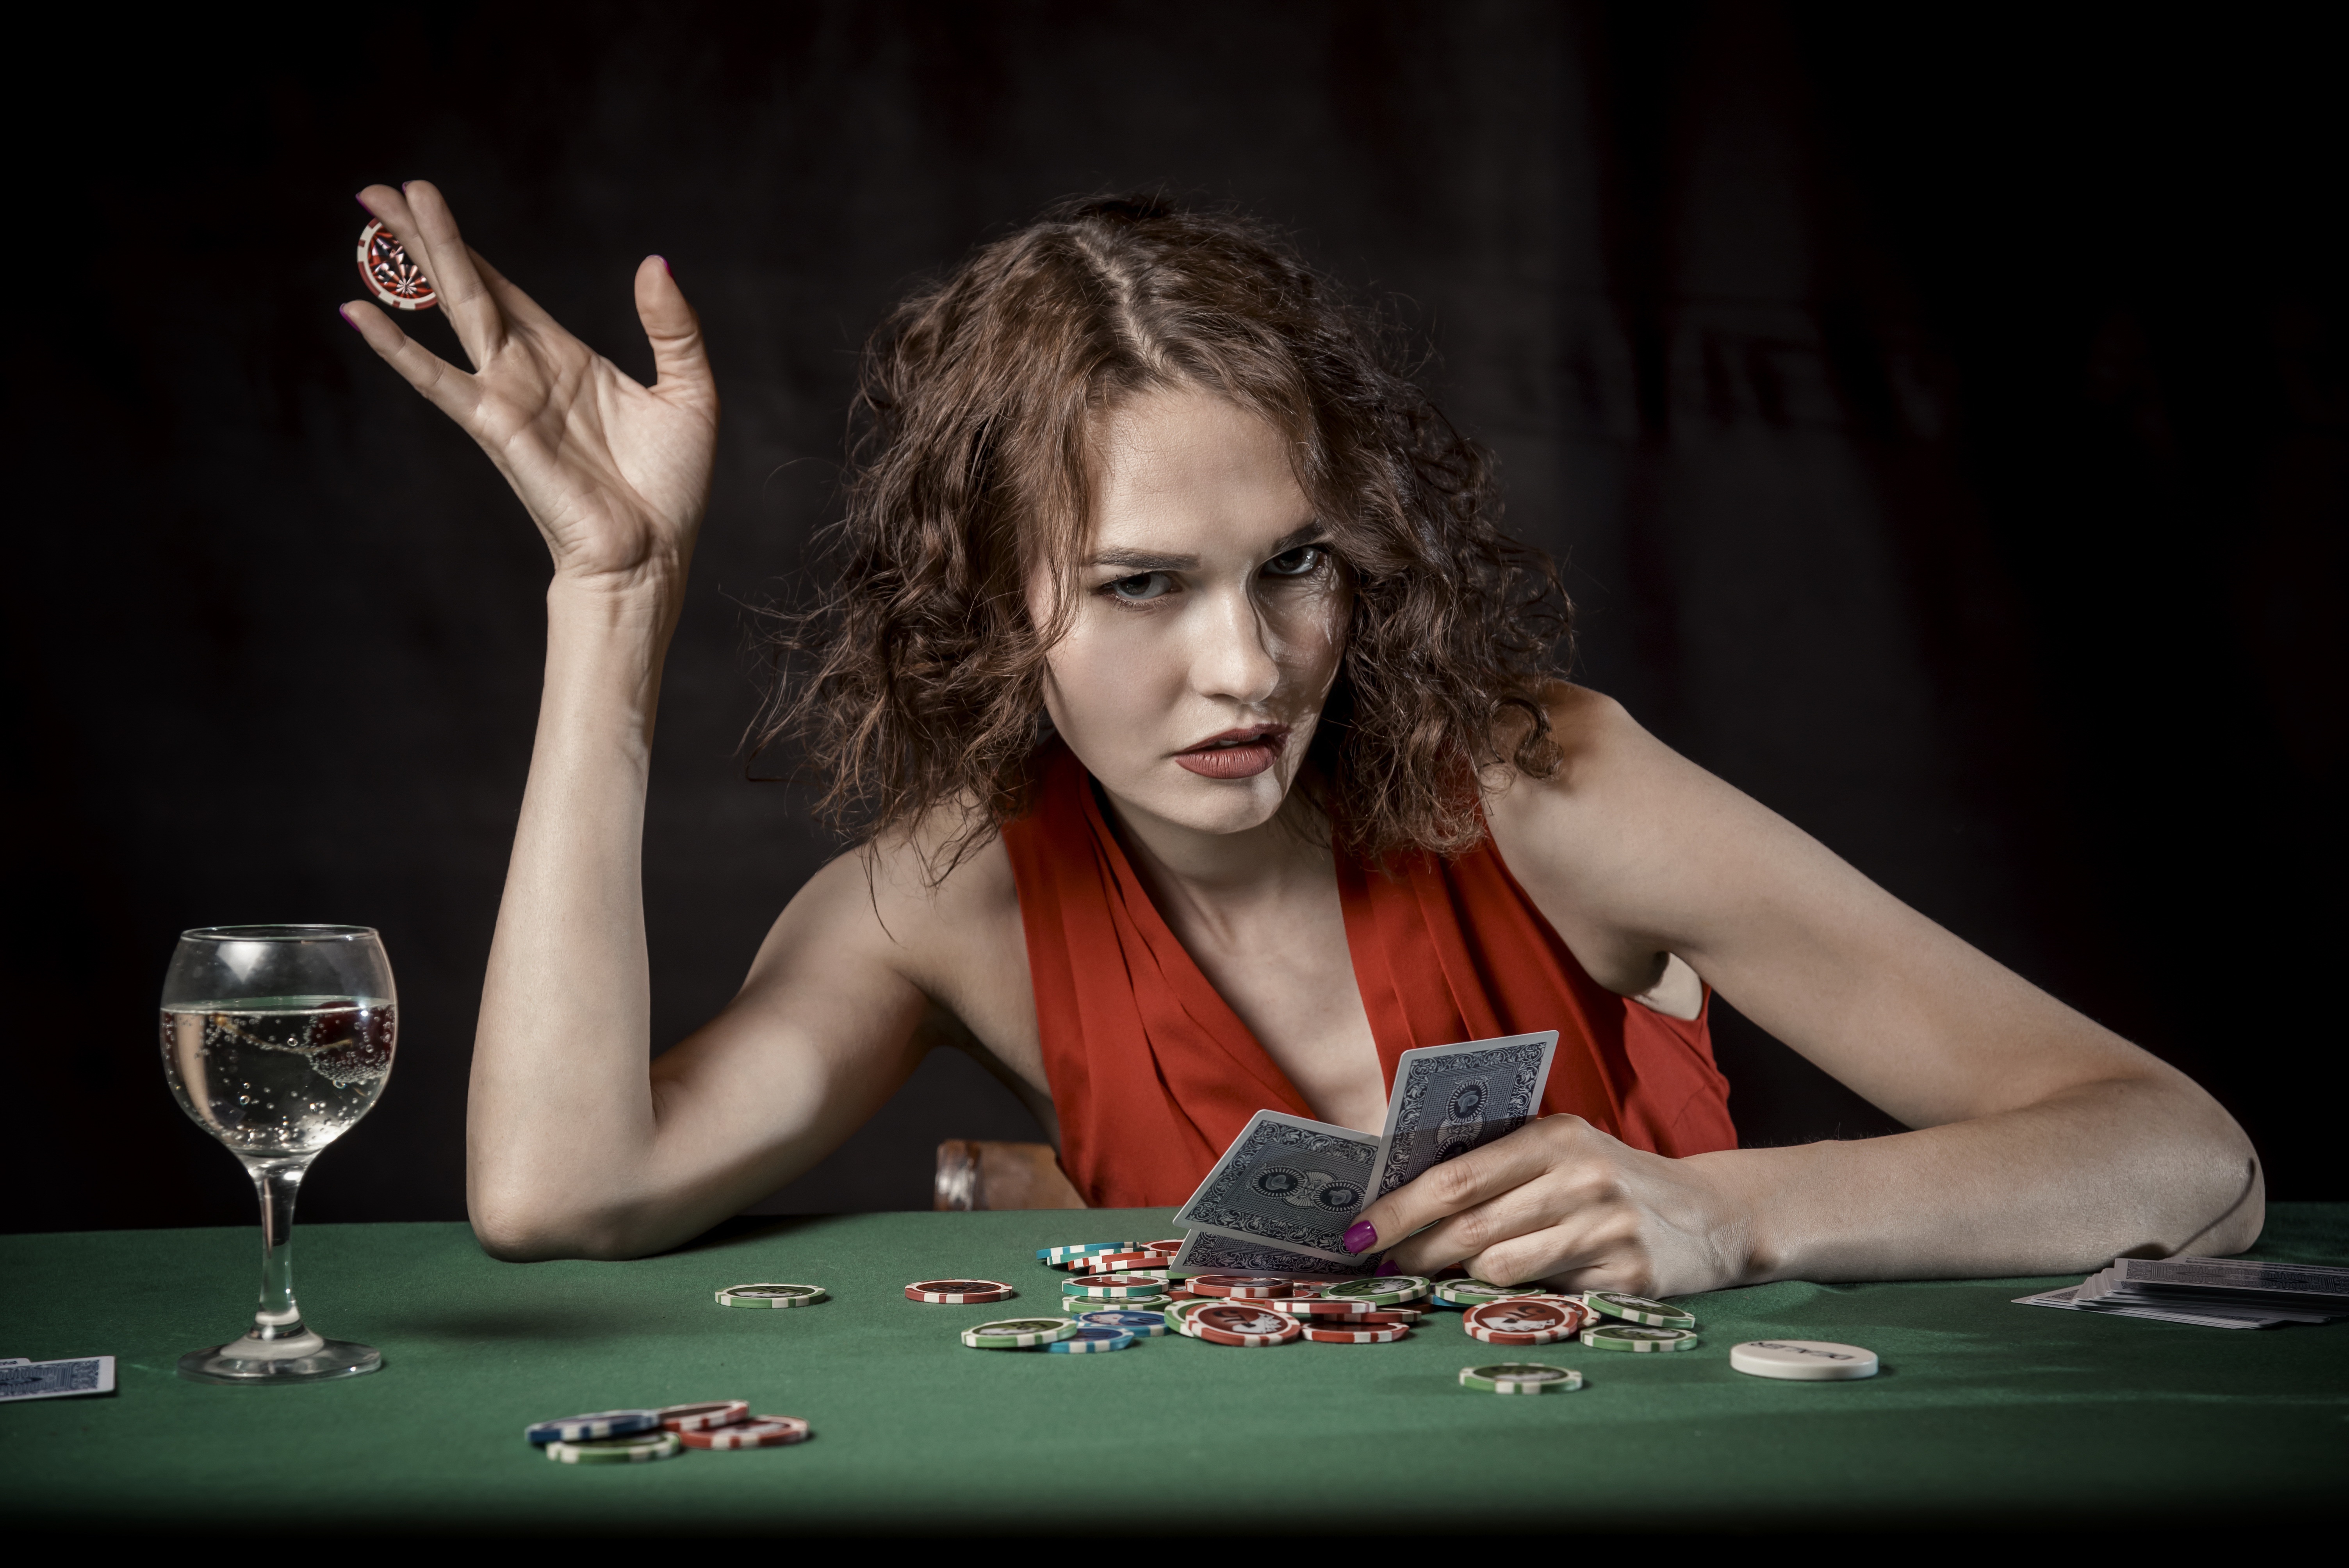 Card Game Casino Girl 6016x4016